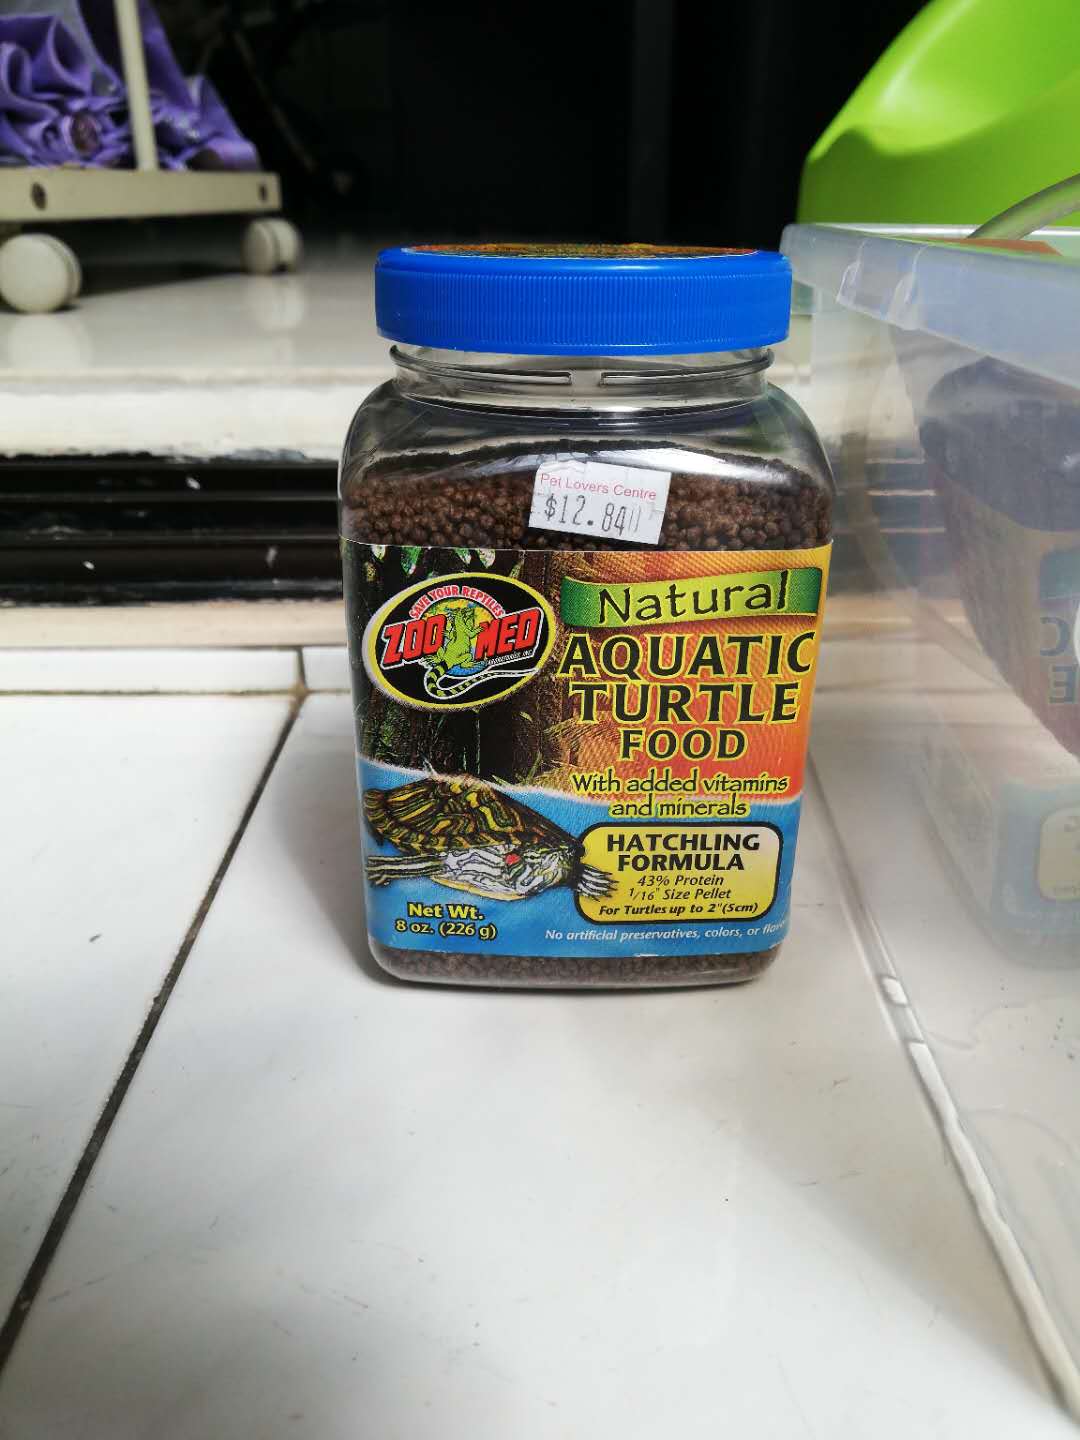 turtle food